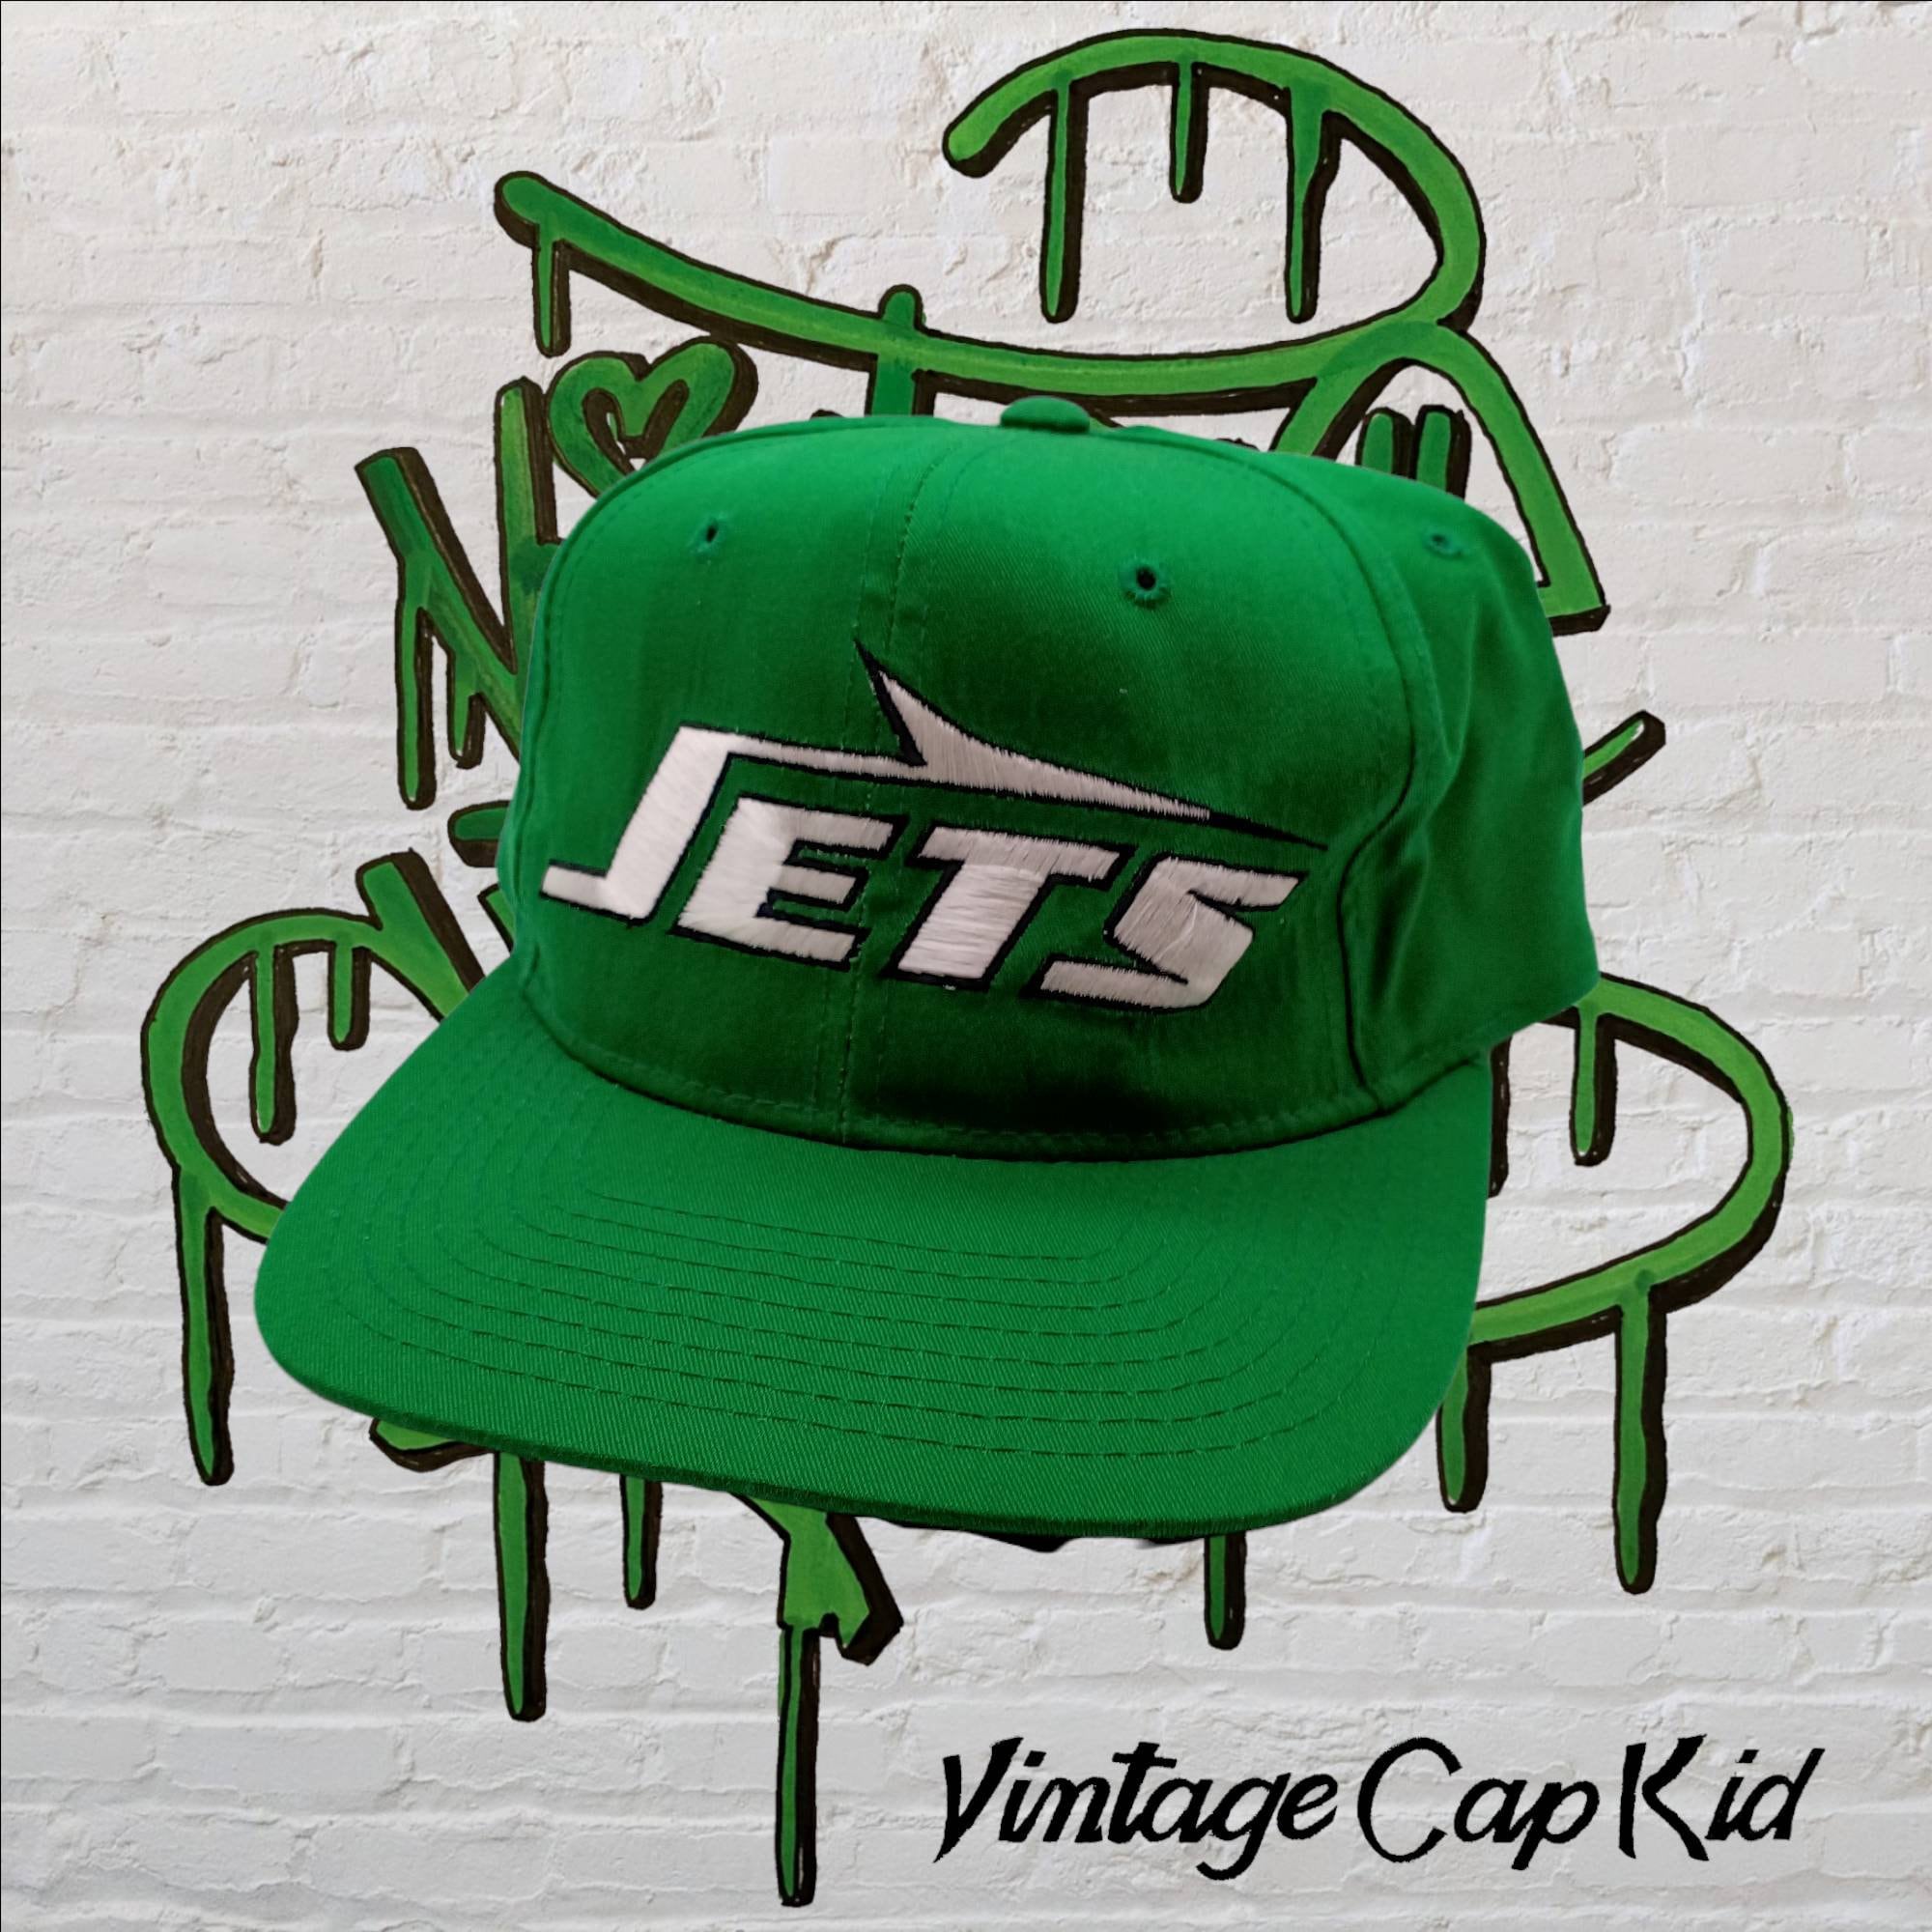 vintage ny jets hat